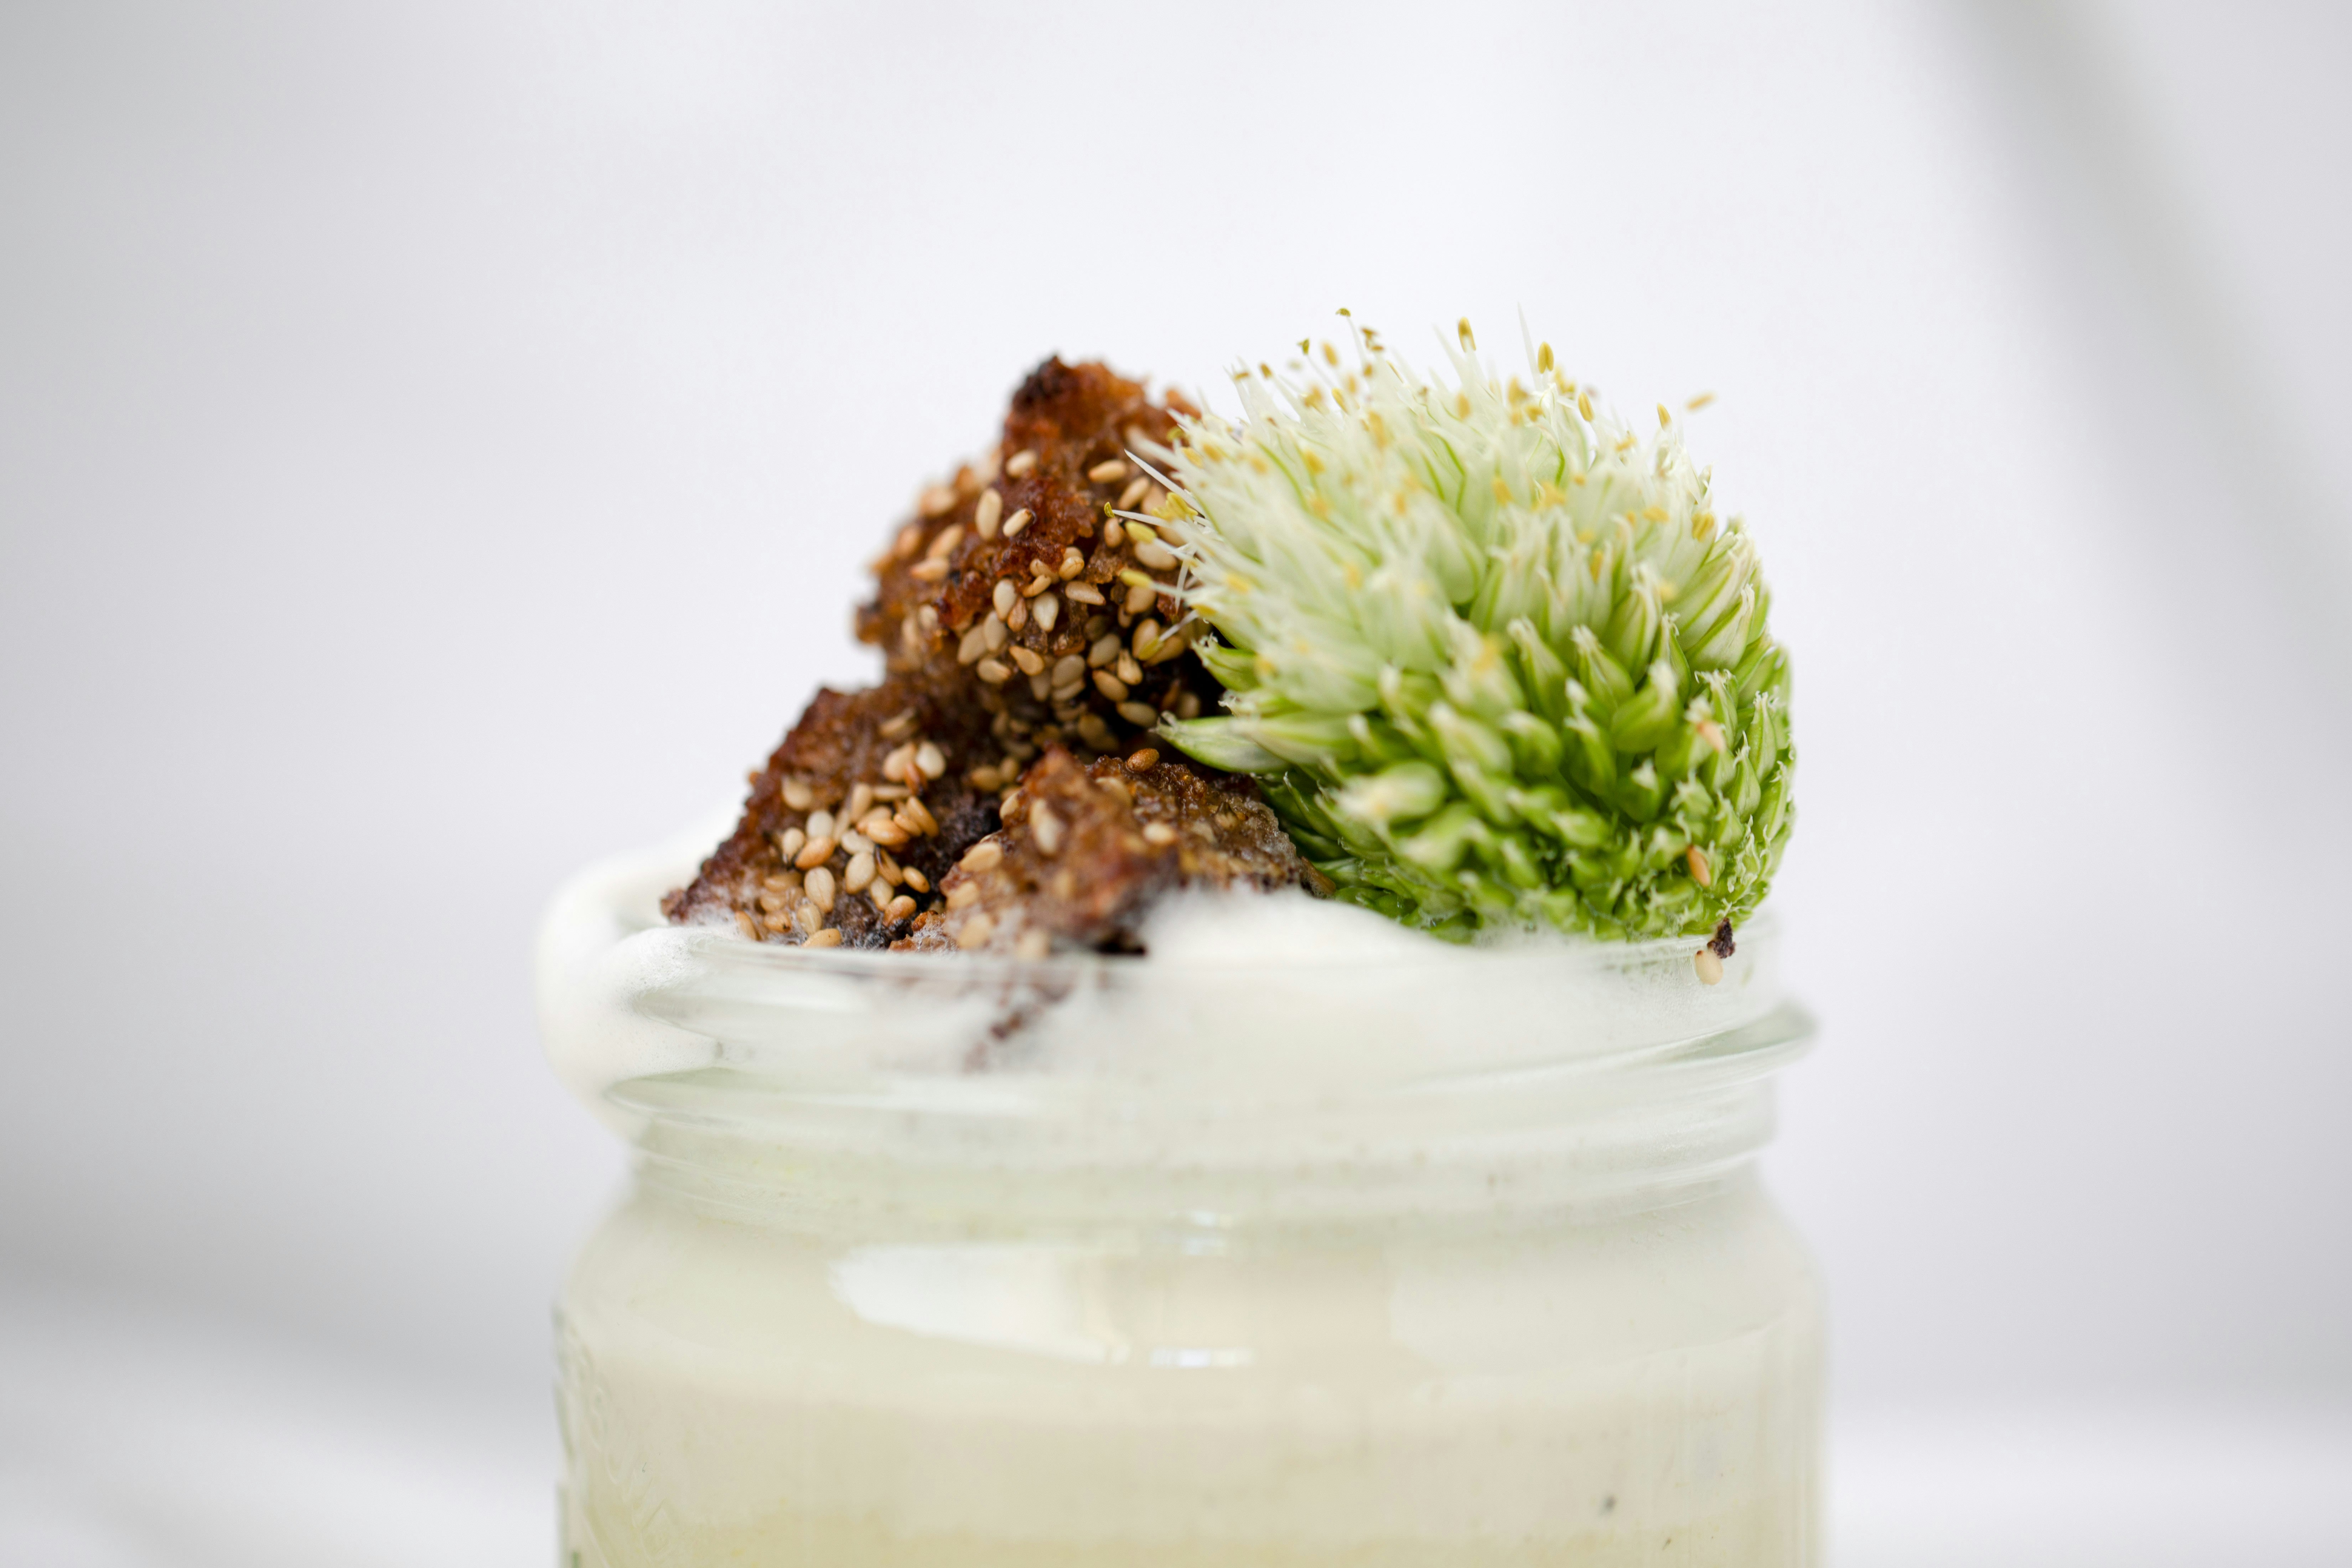 green plant in white ceramic jar